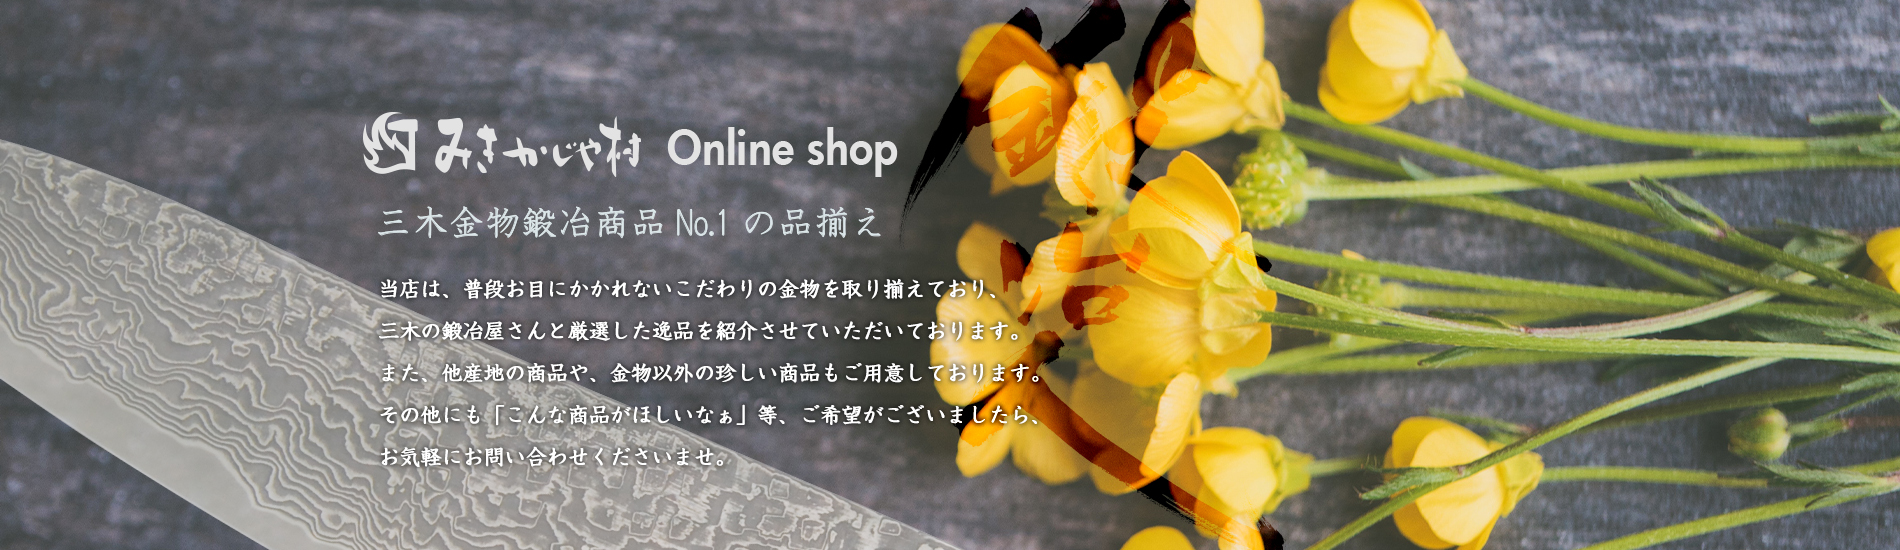 みきかじや村 Online shop